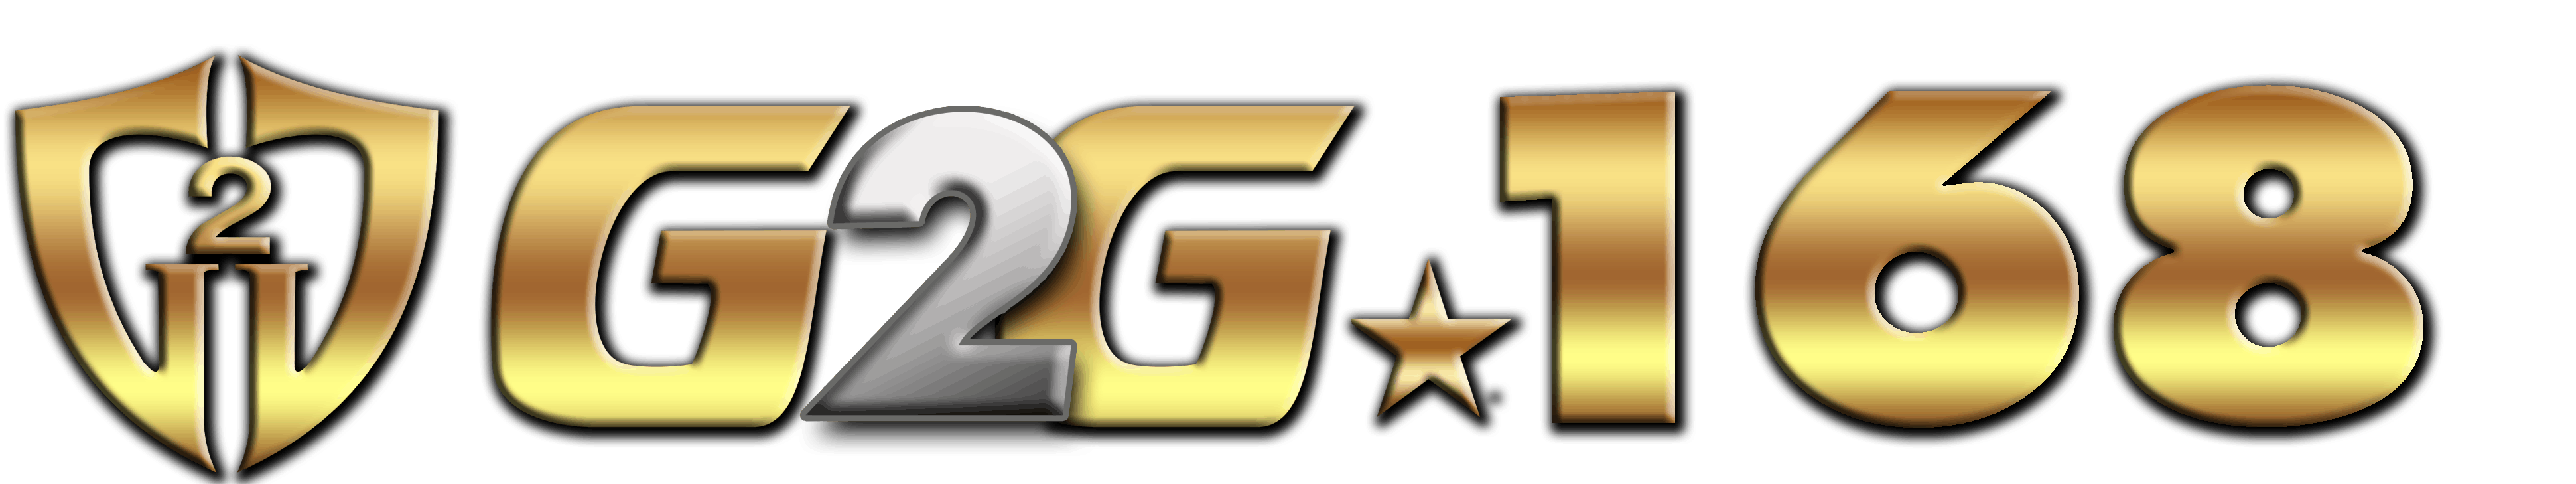 G2G168 logo